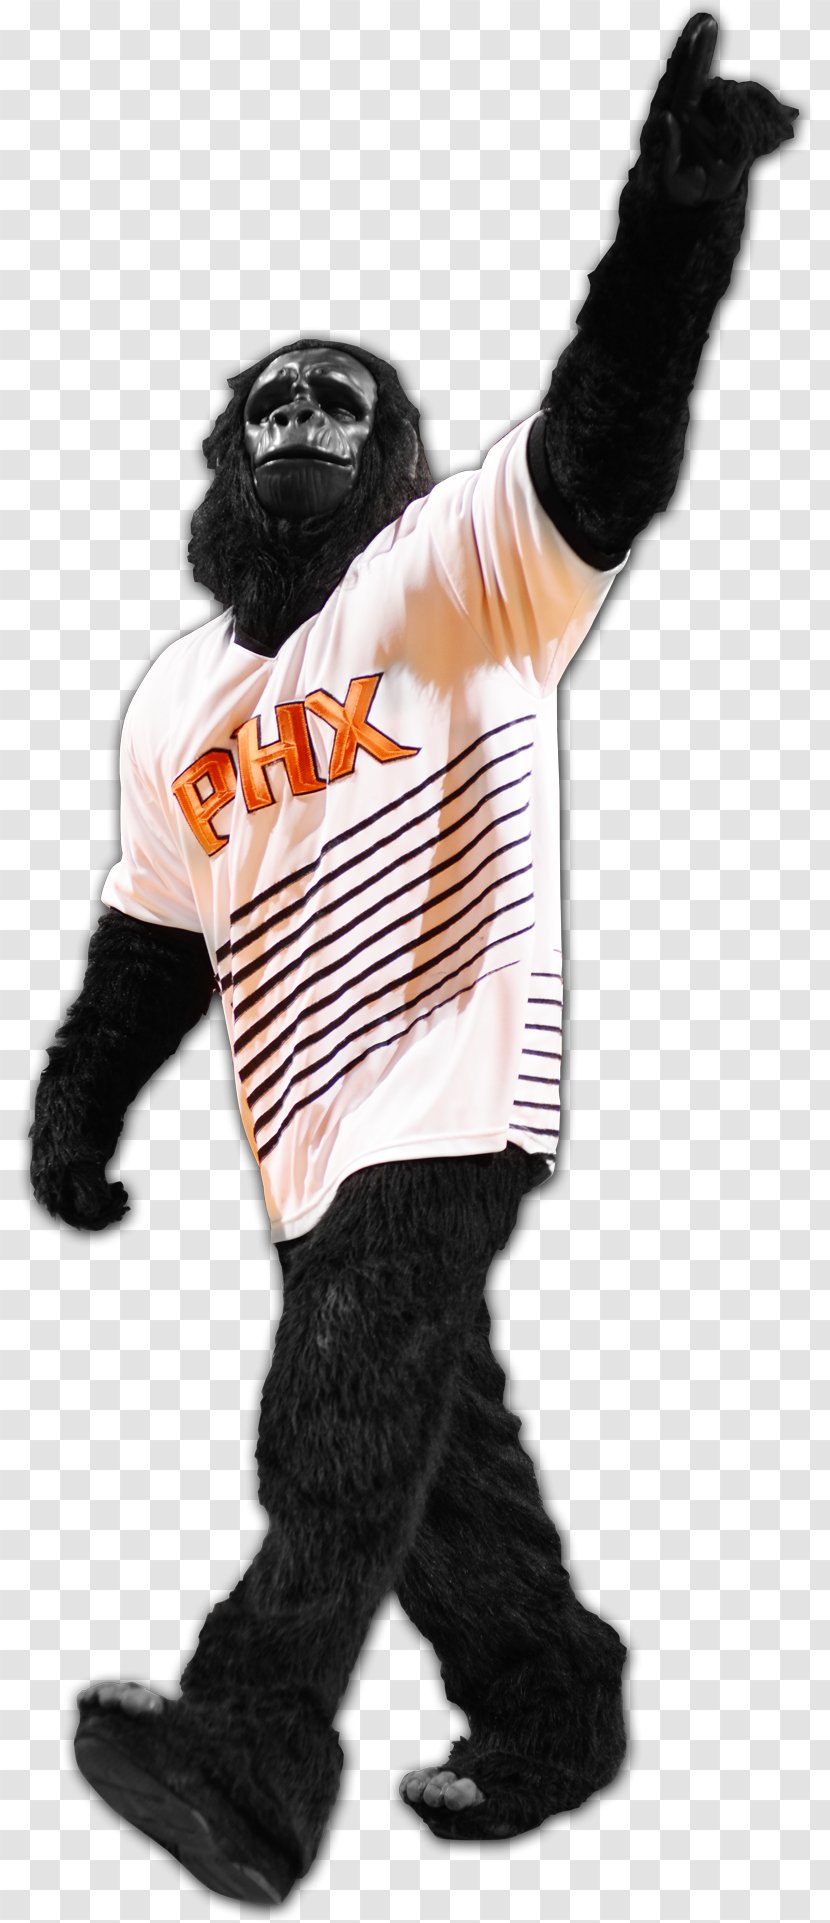 Phoenix Suns NBA 2K17 Mascot The Gorilla - Orlando Magic - Mascots Transparent PNG